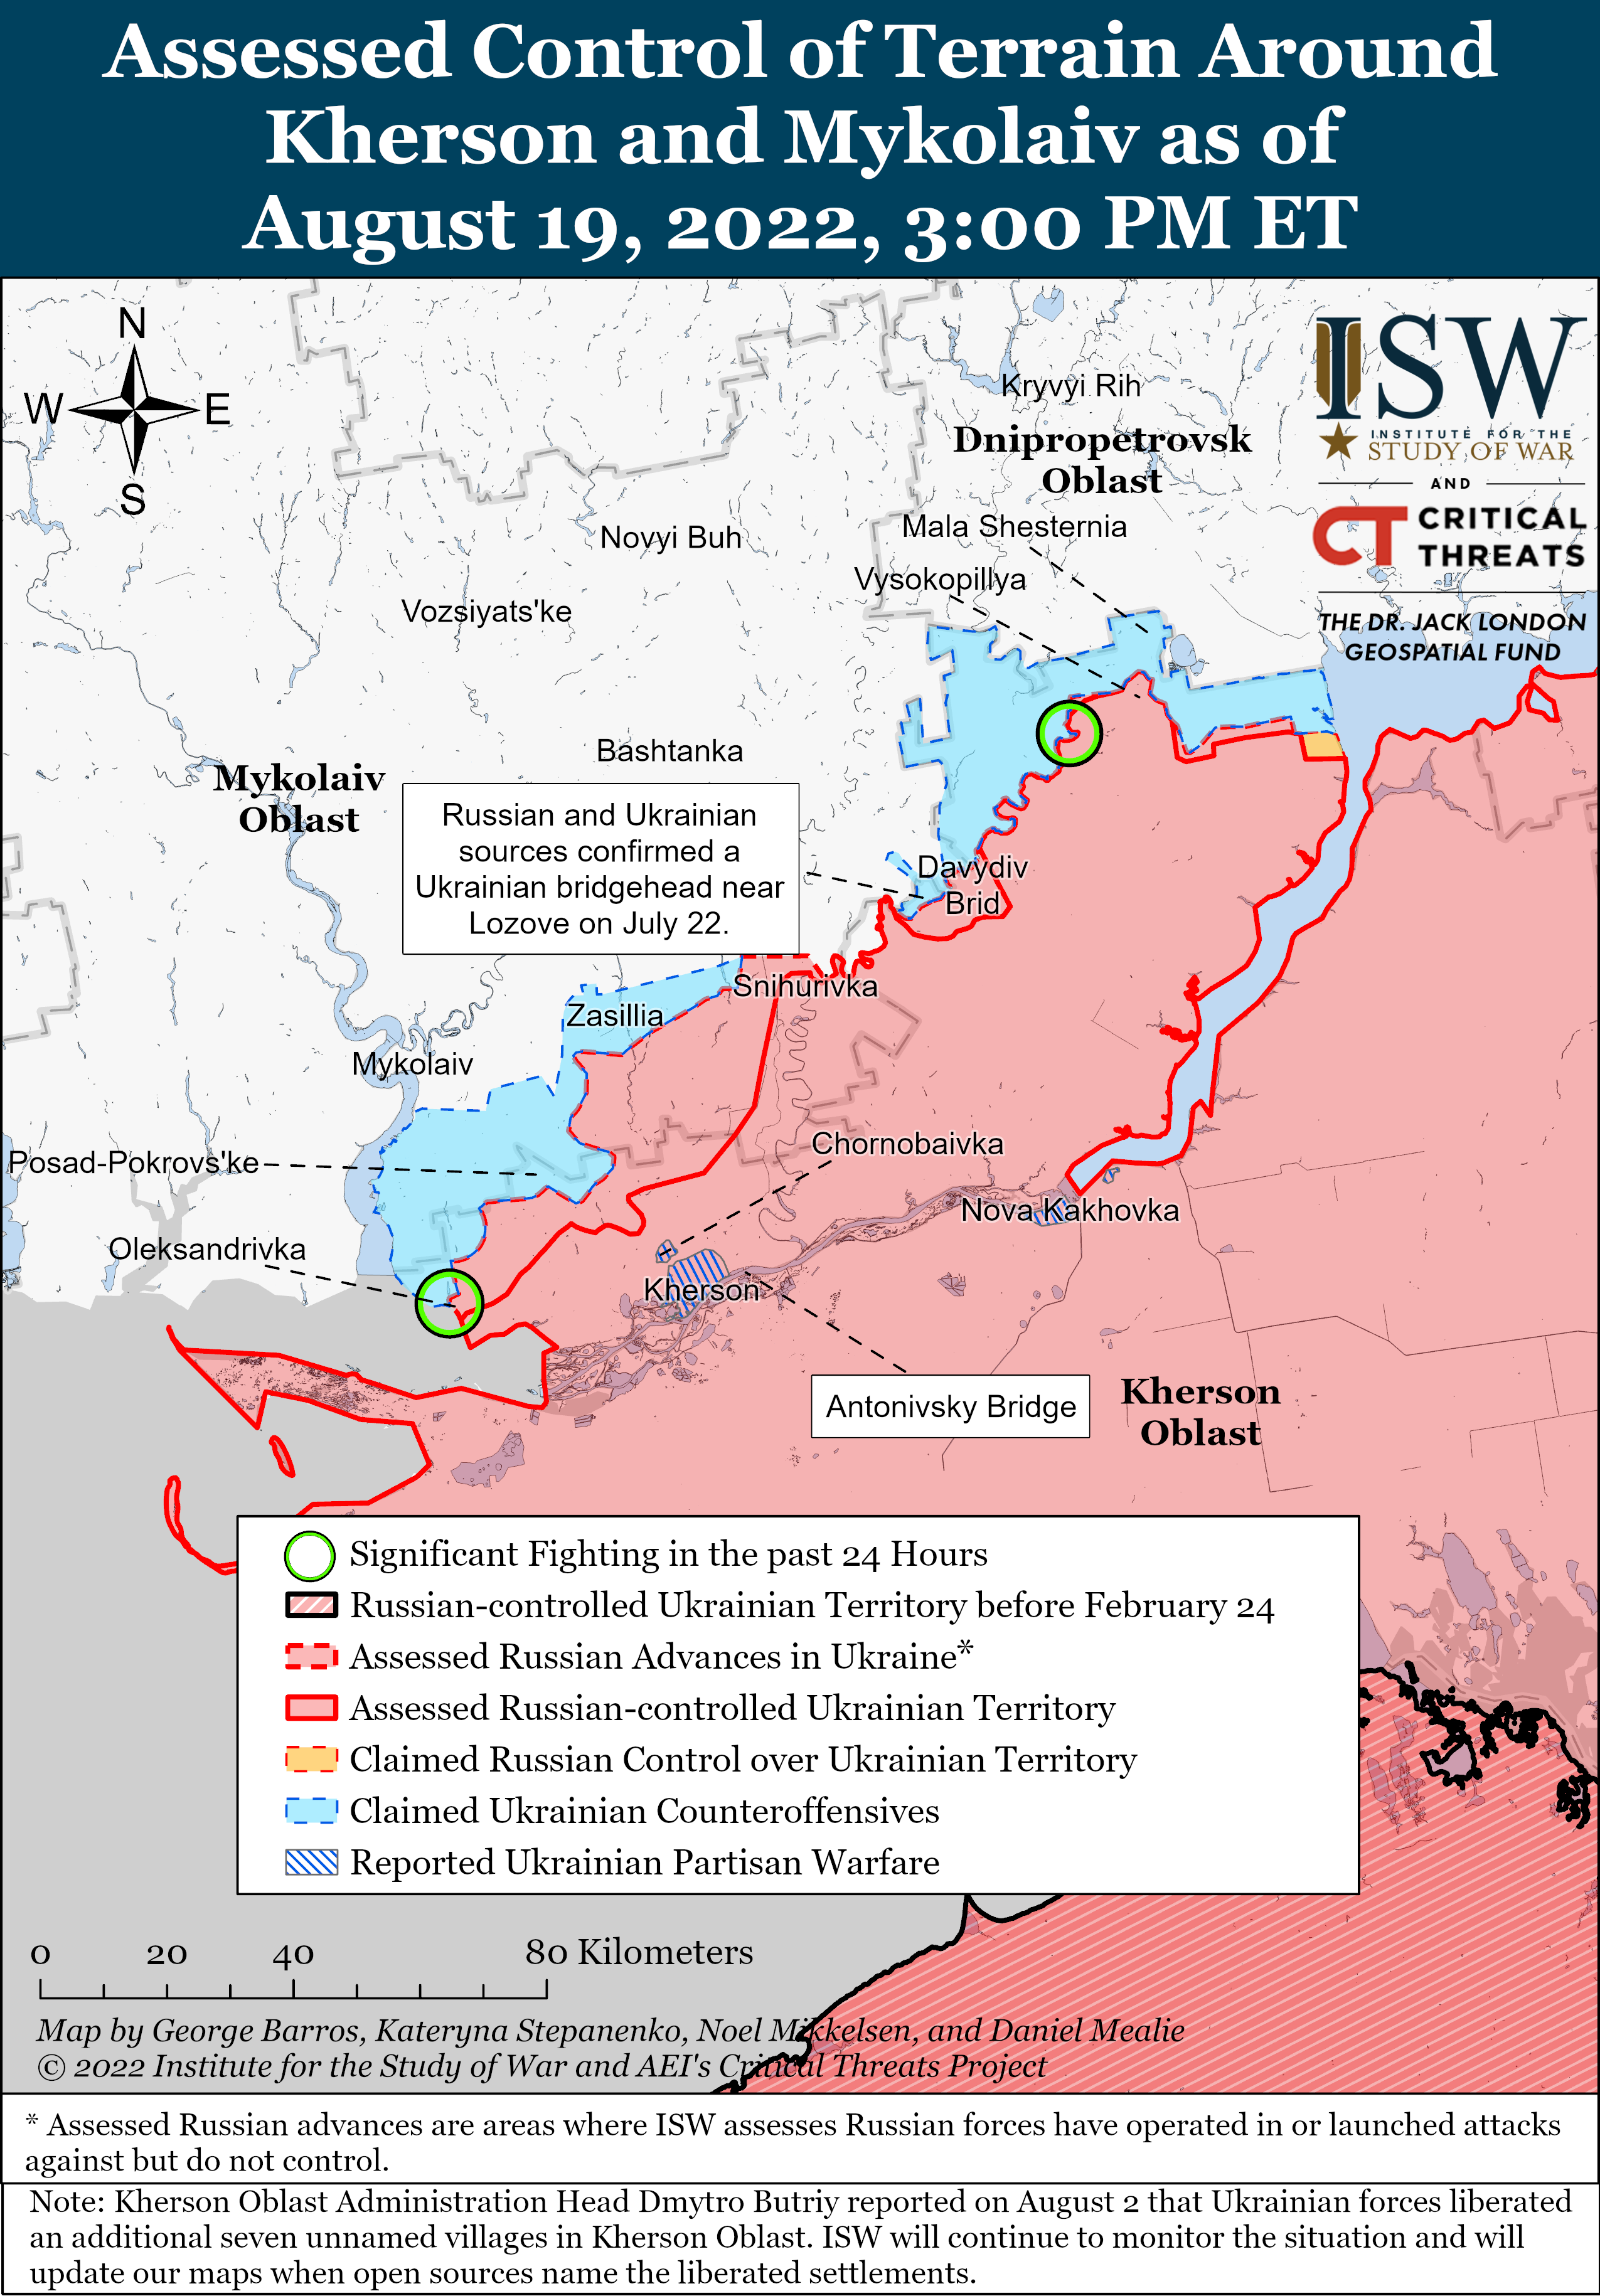 Wie ist der aktuelle Stand (19.08.22) der russischen Truppen in der Ukraine?